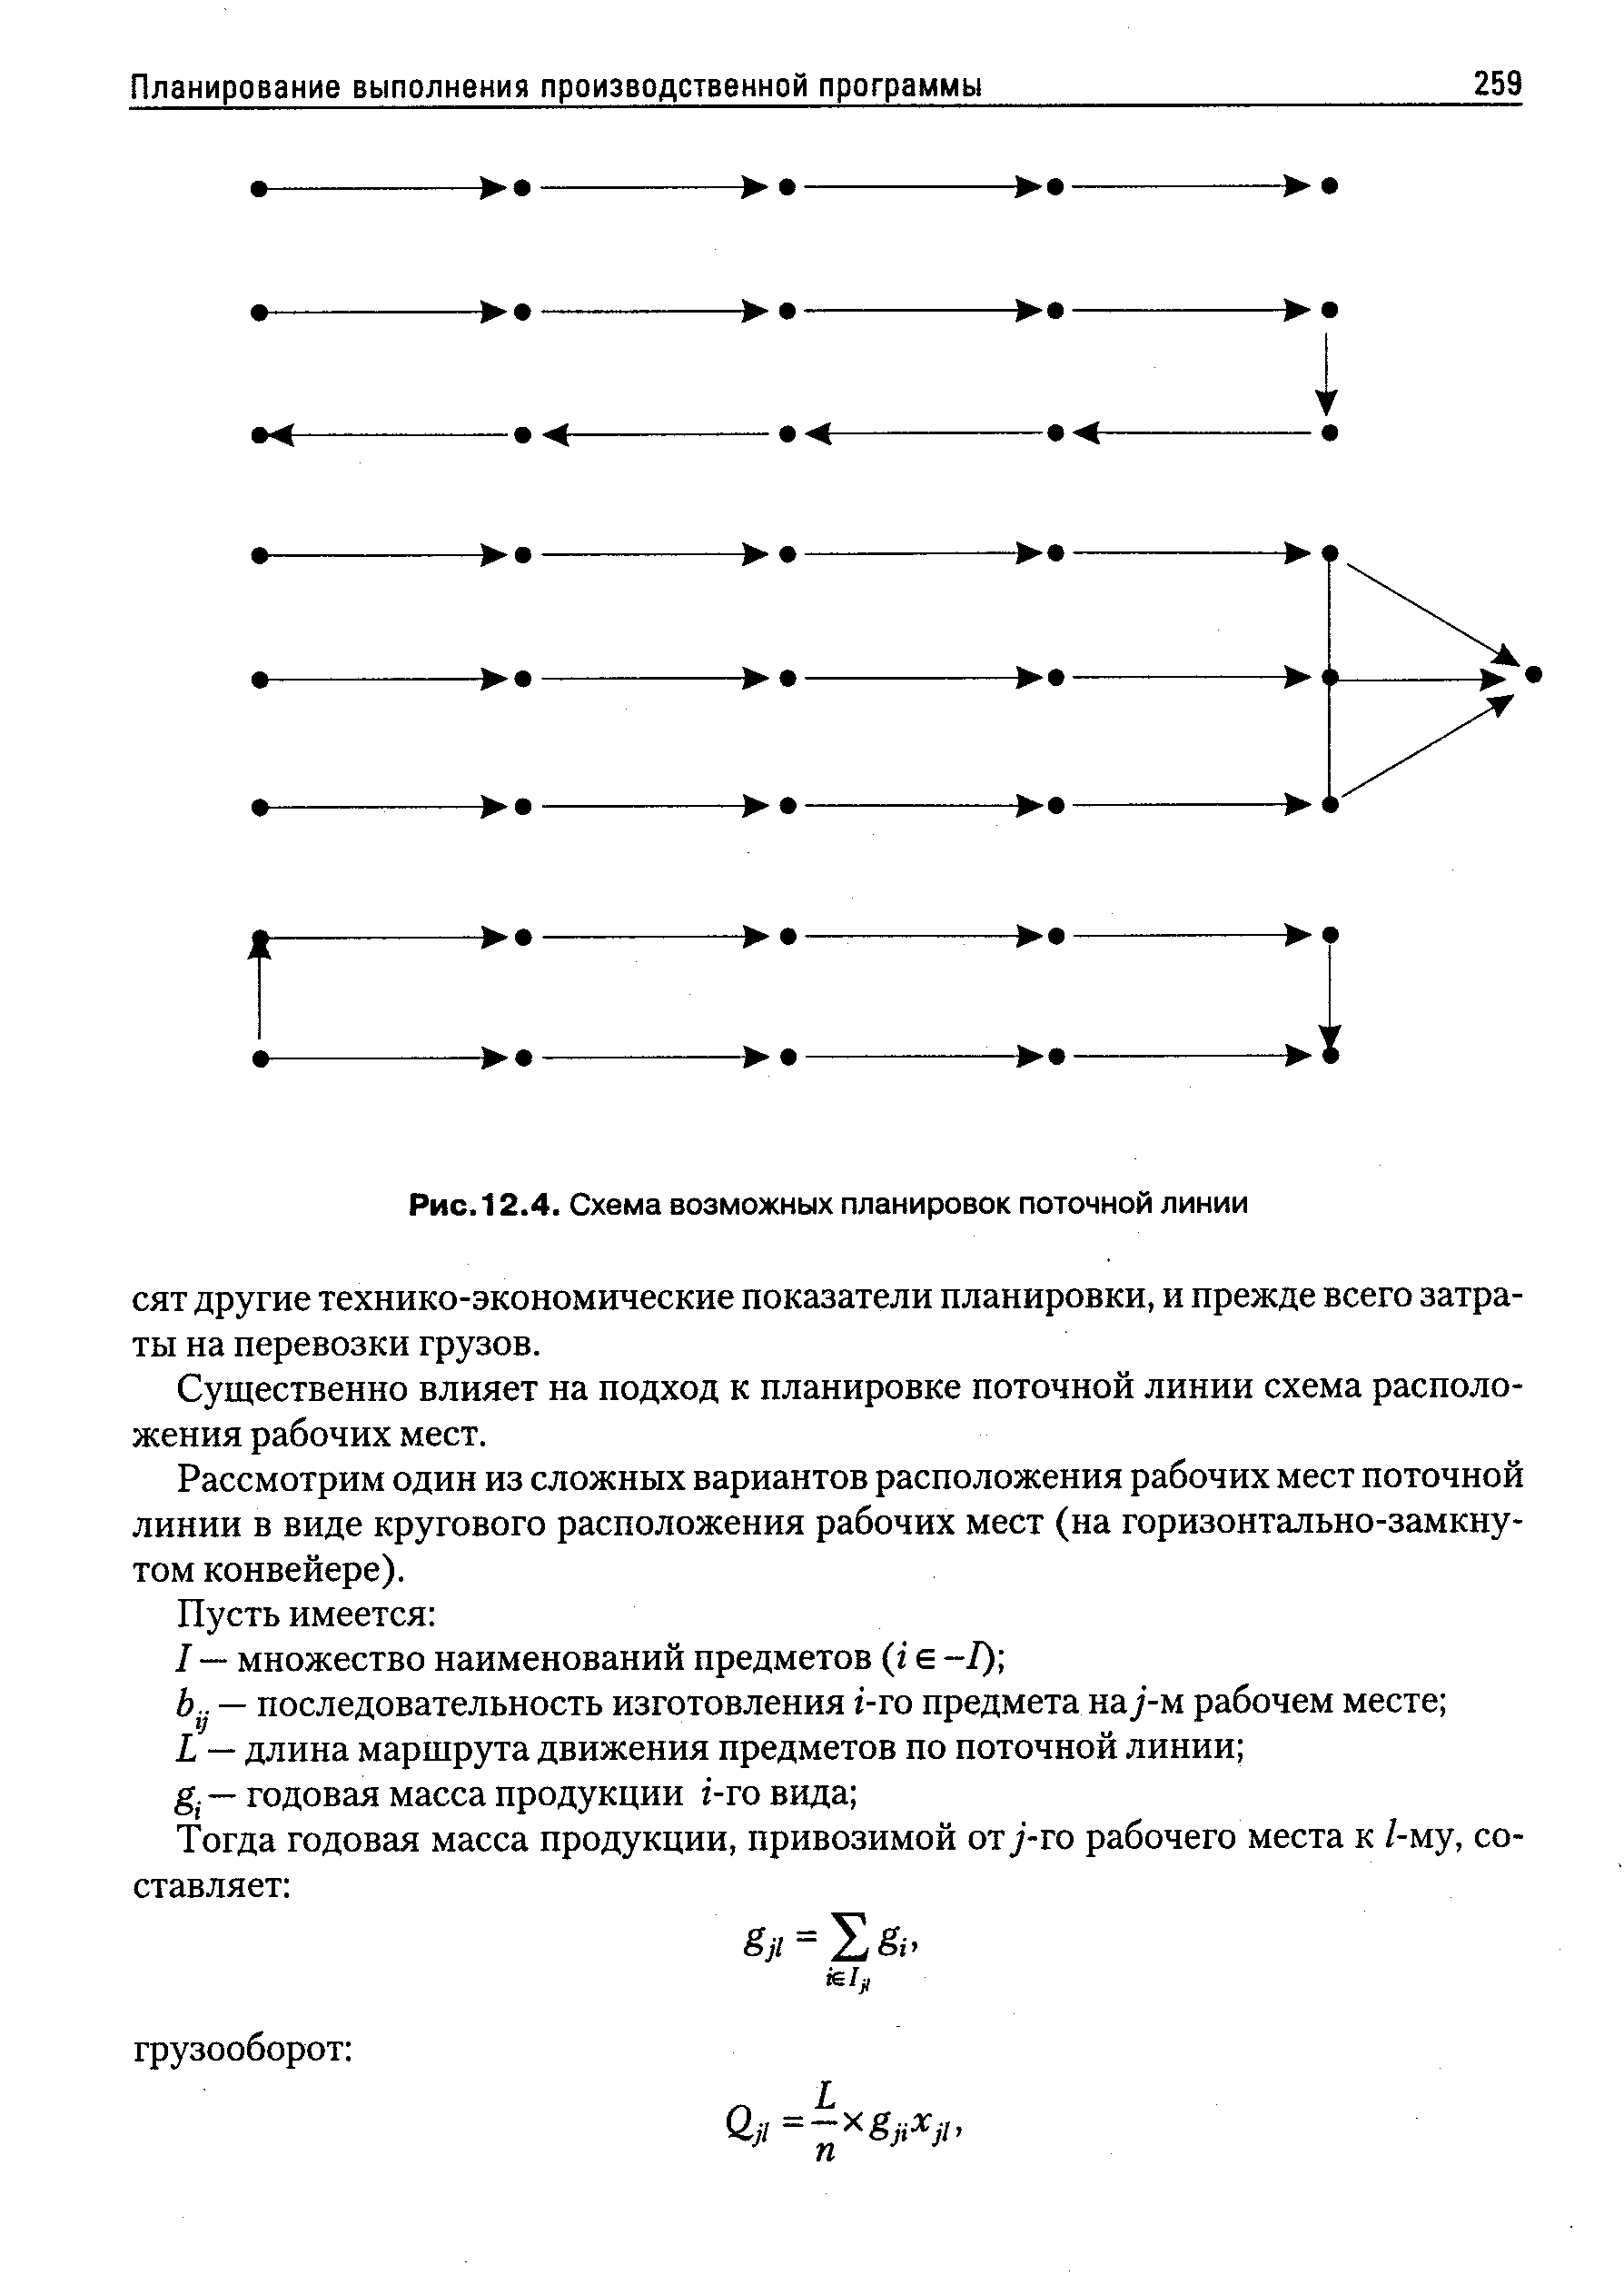 Рис. 12.4. Схема возможных планировок поточной линии
